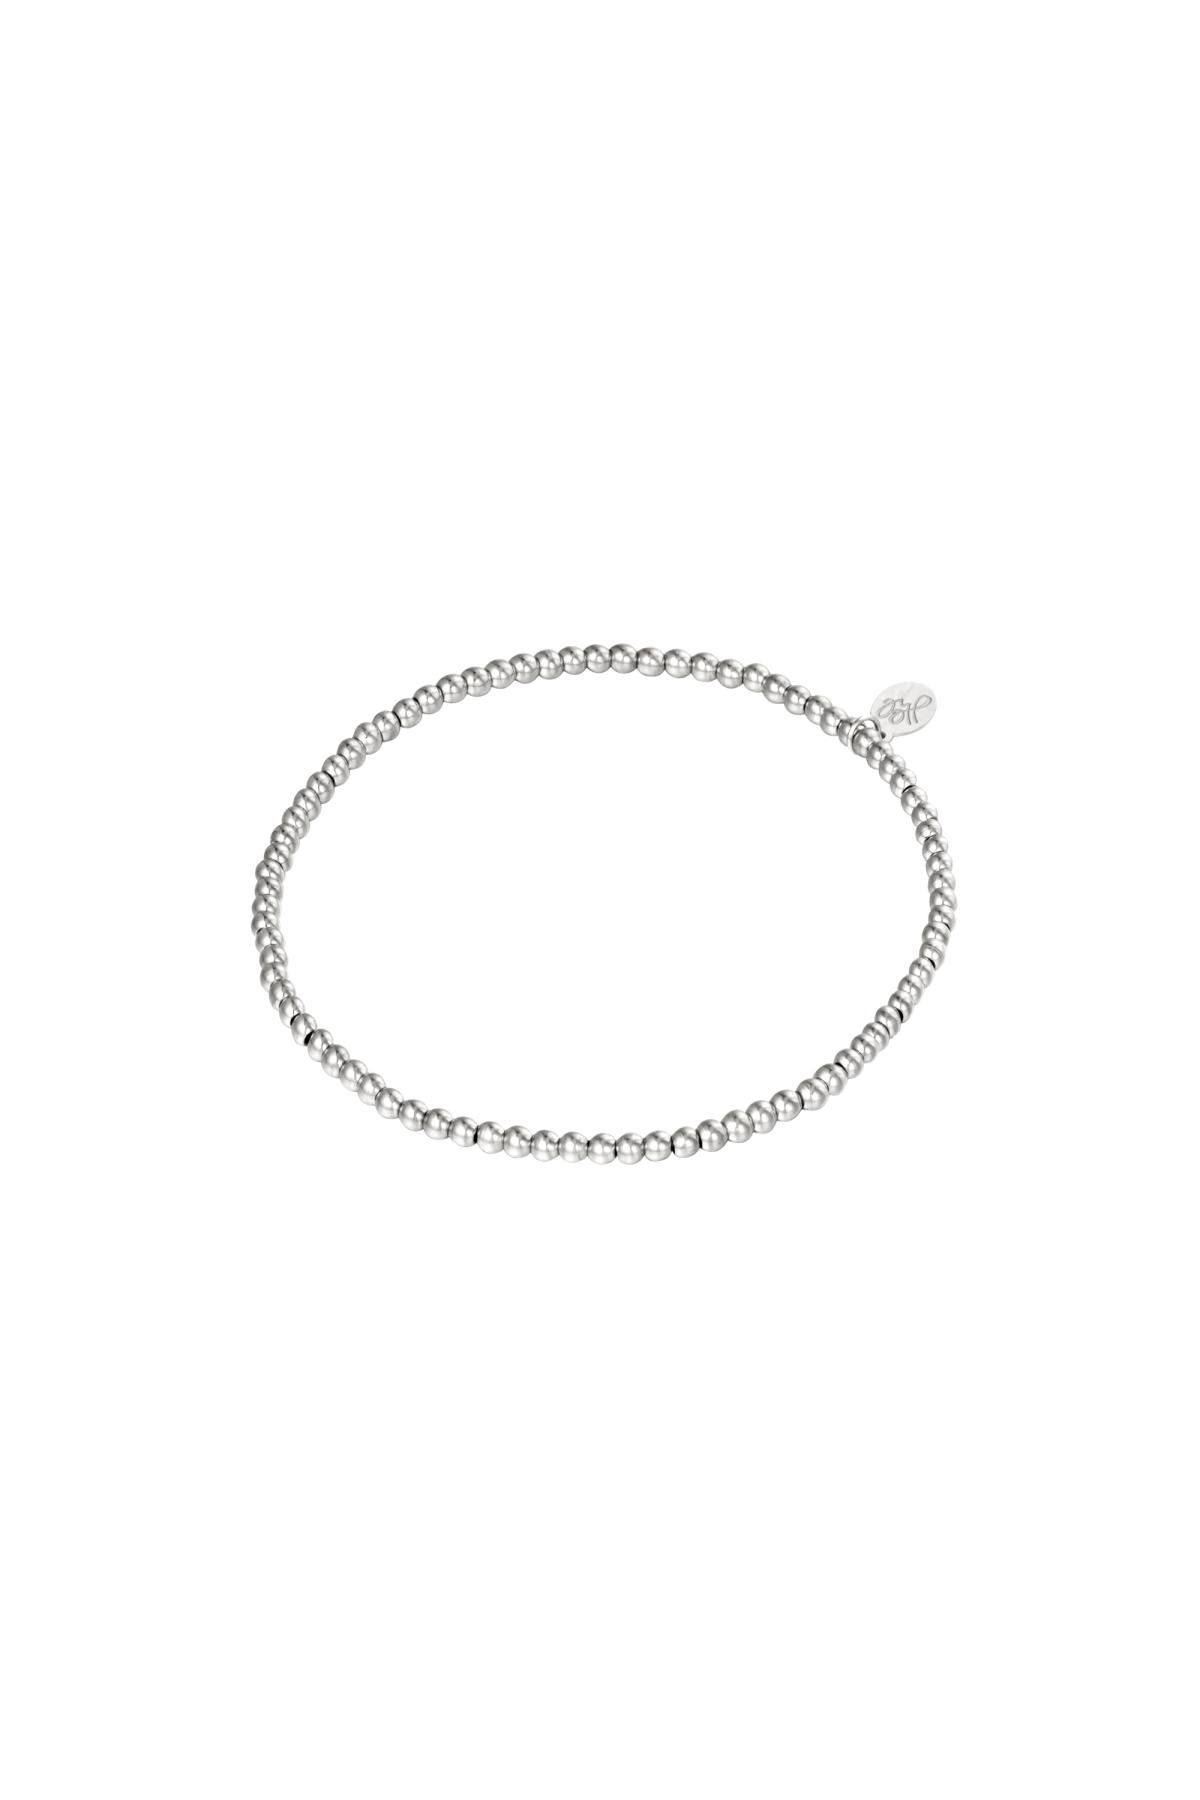 Armband Kleine Perlen Silber Edelstahl-2,5MM